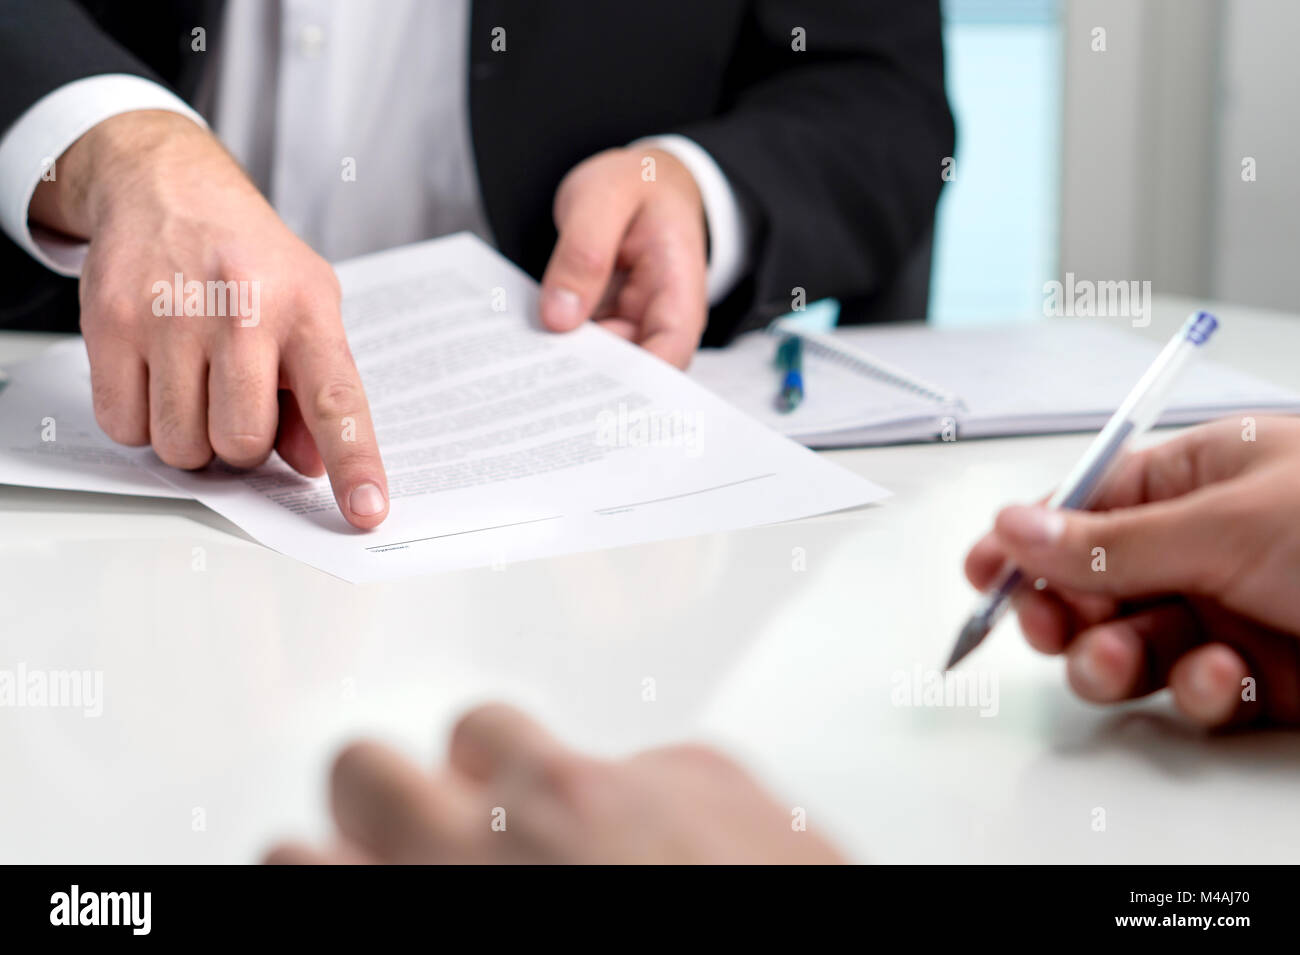 Die Unterzeichnung eines Vertrags oder einer Vereinbarung. Banker oder Rechtsanwalt übersicht Client die Zeile in einem Dokument Papier Autogramm. Geschäftsmann mit einem Kunden im Amt. Stockfoto